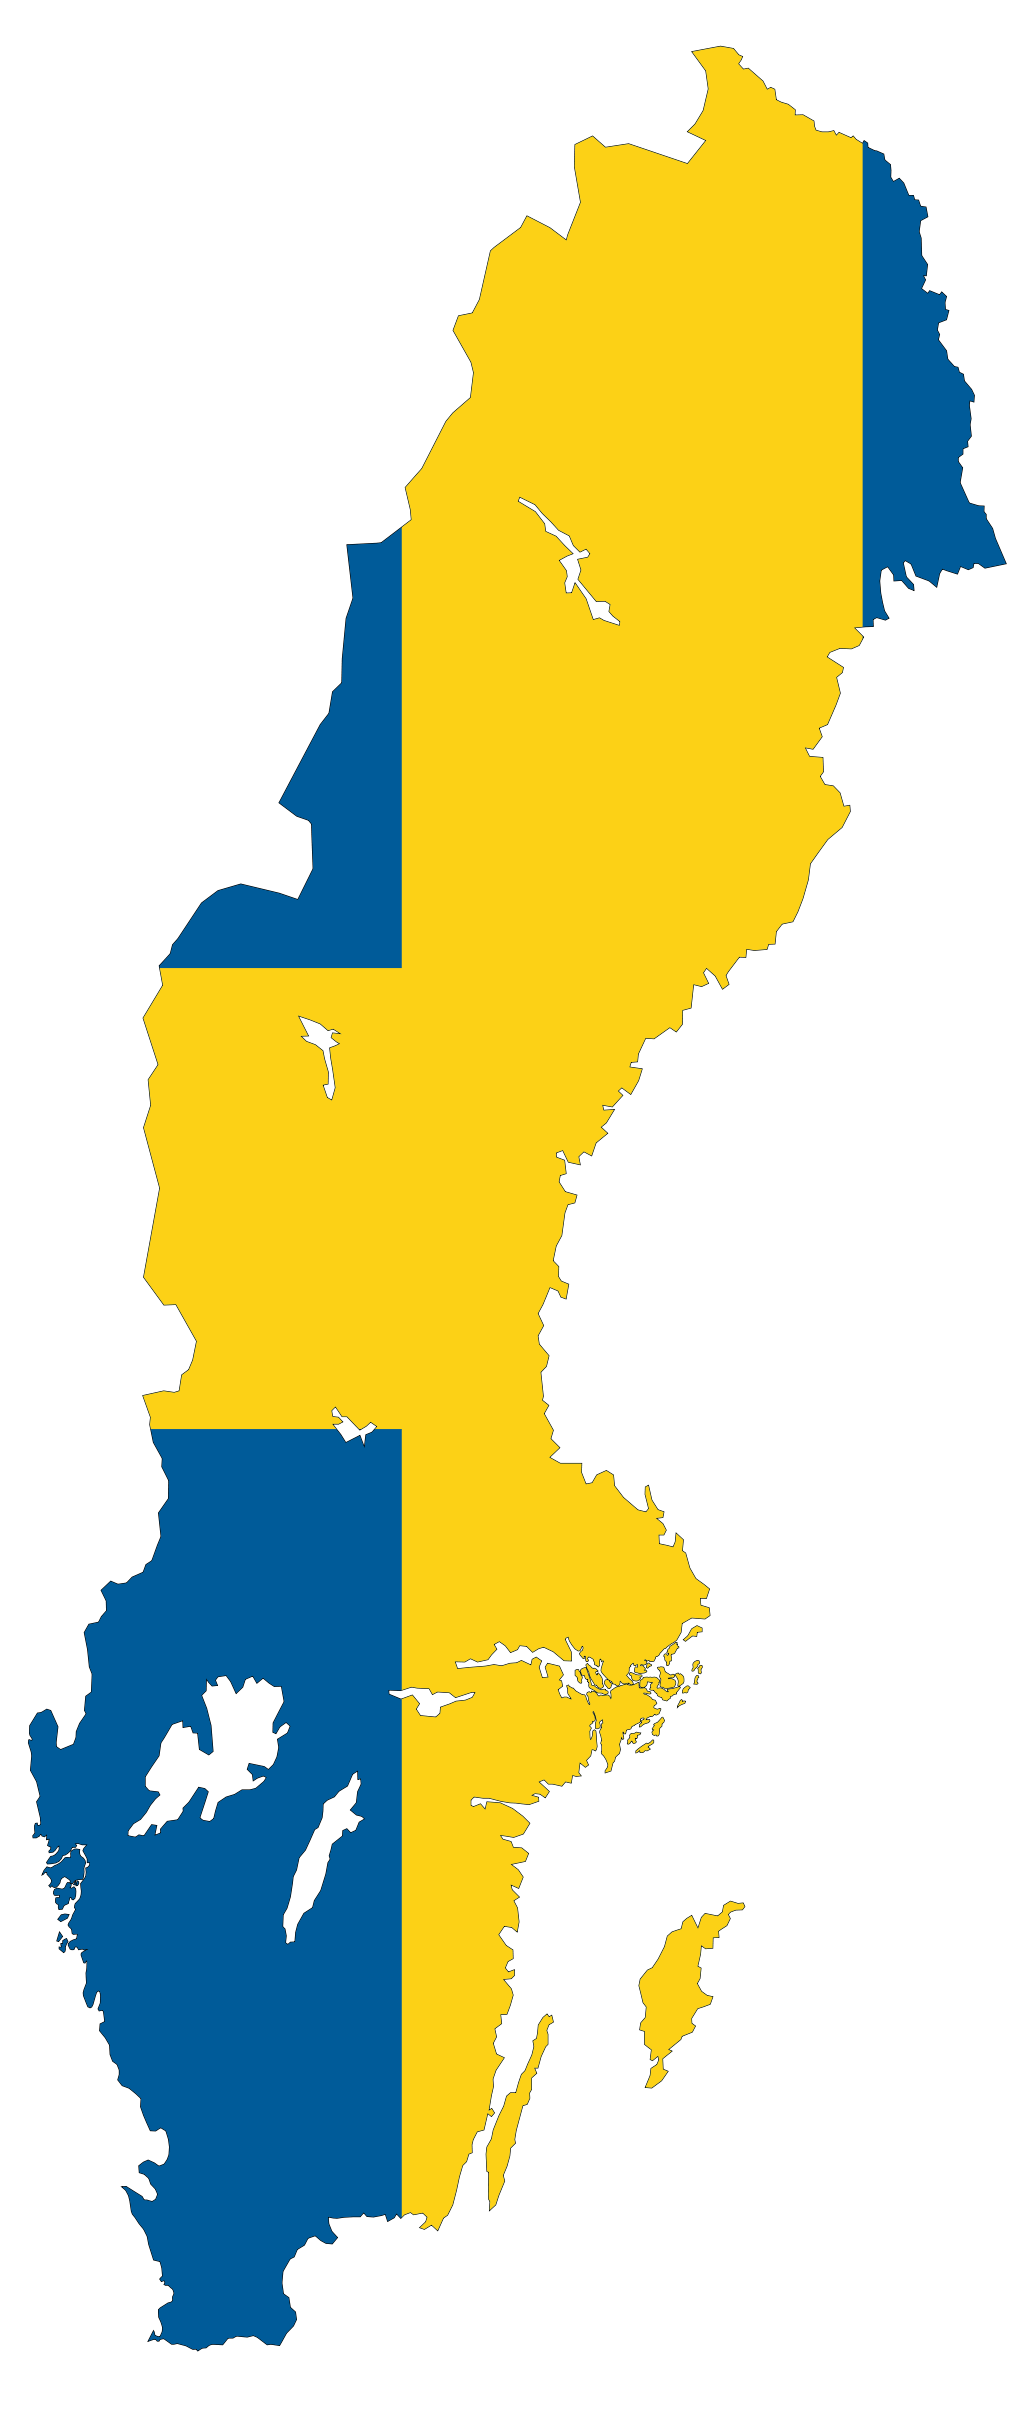 Sweden flag map